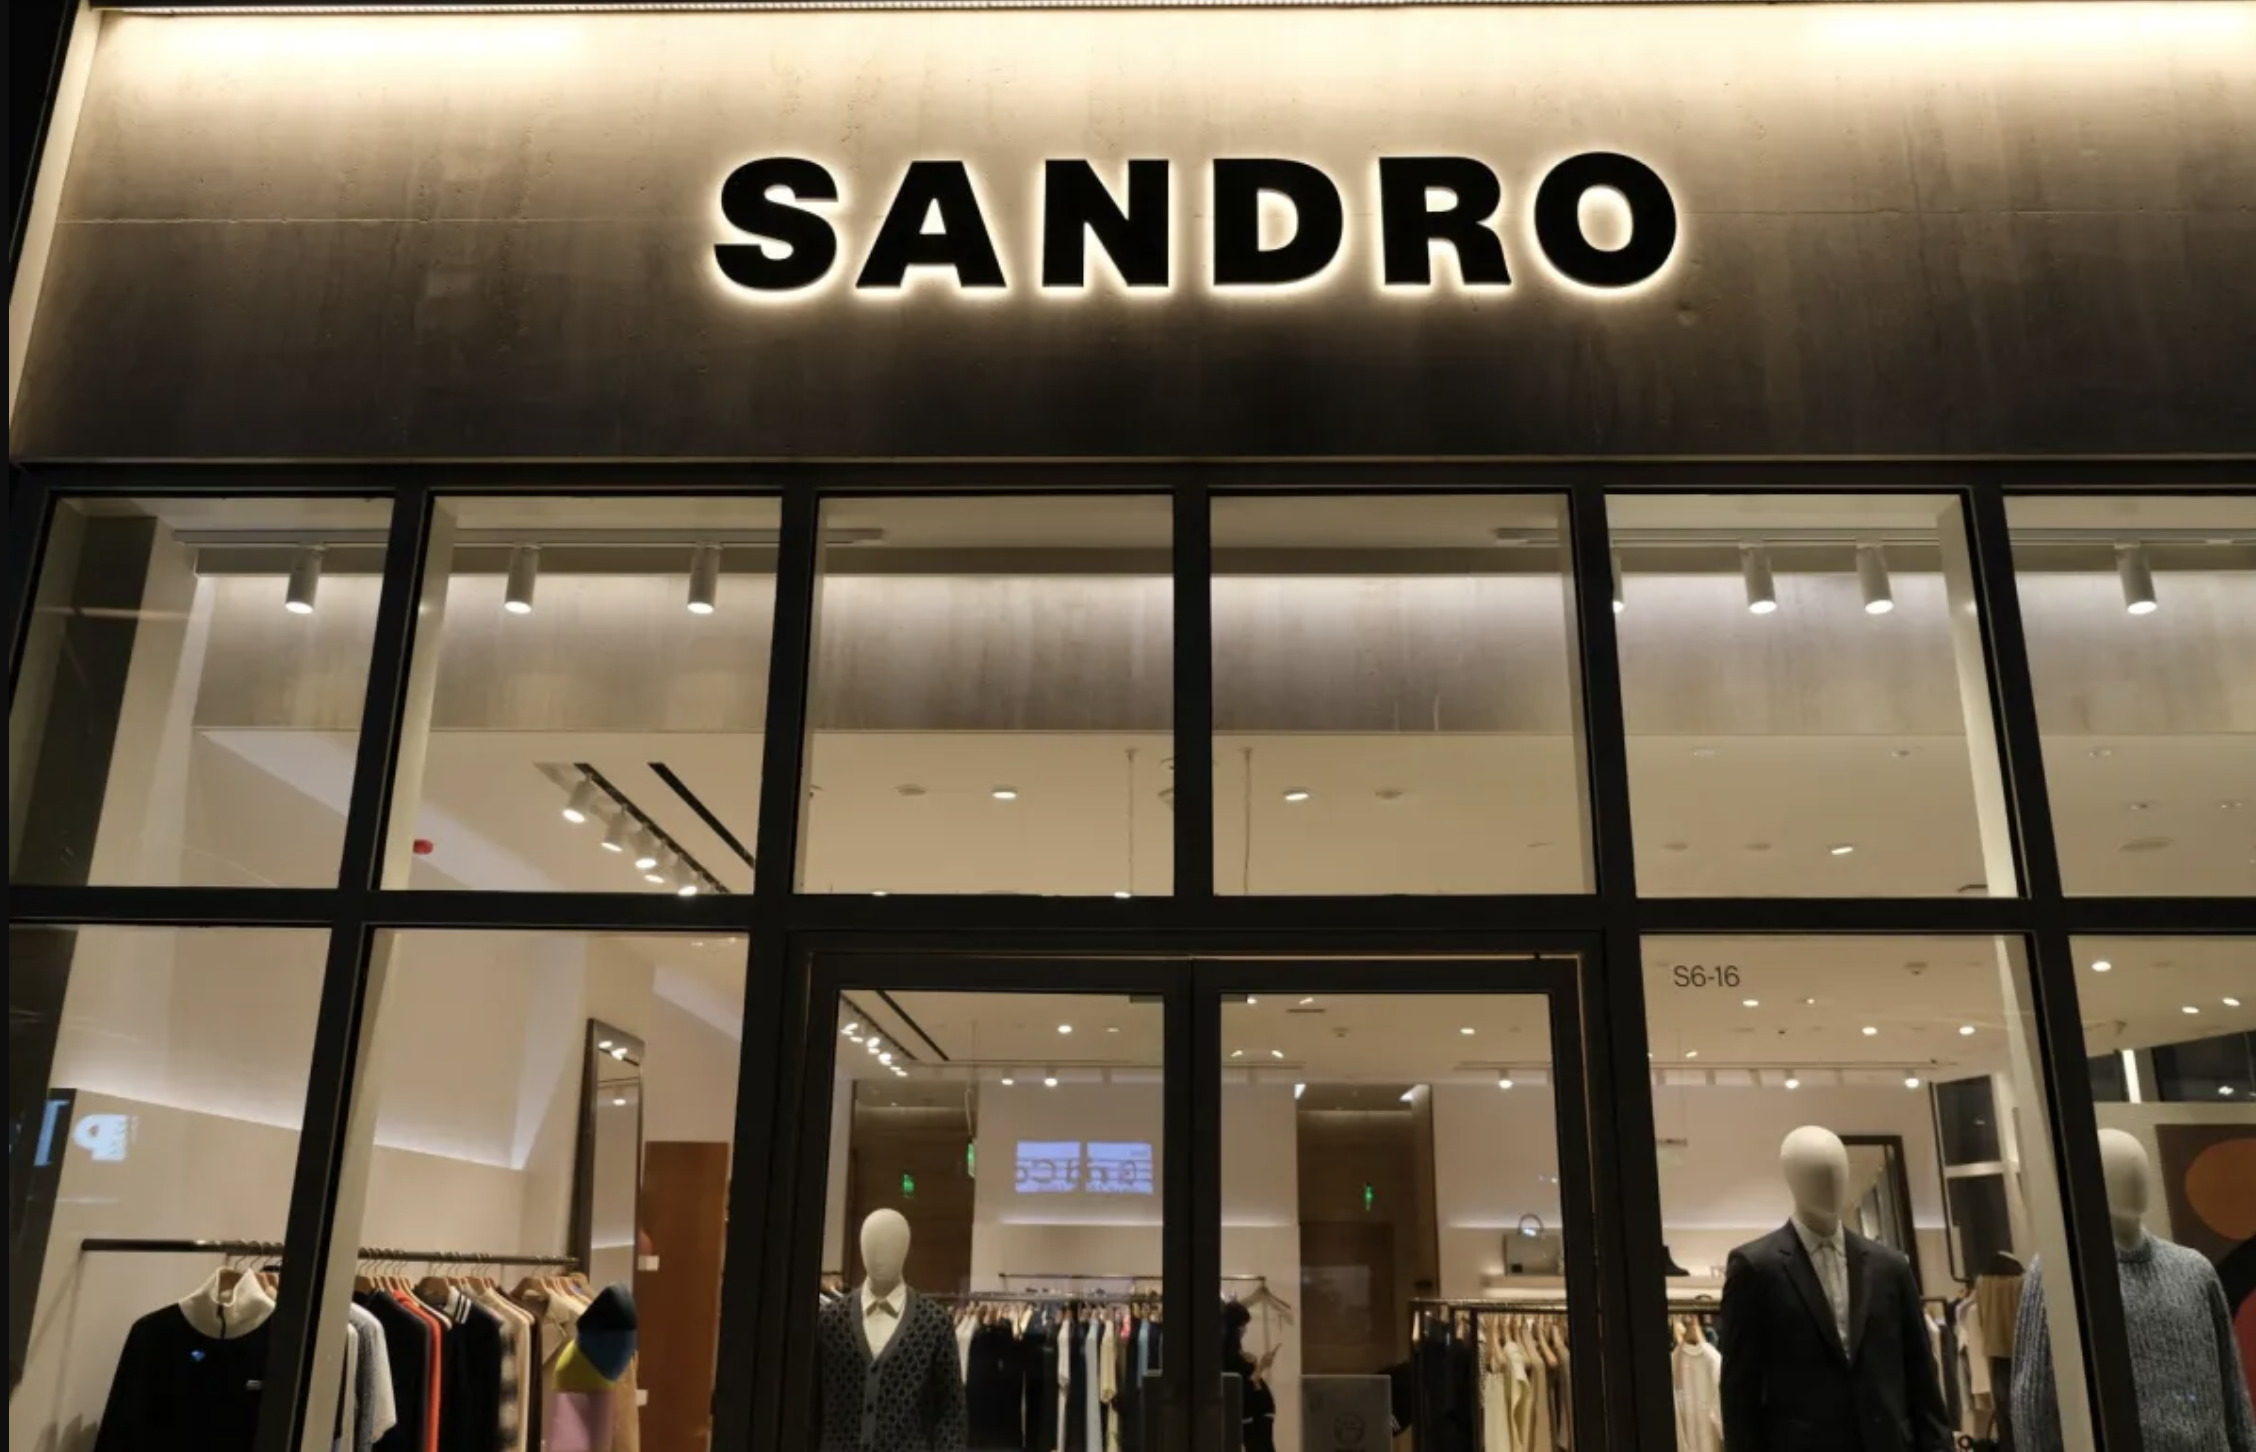 Sandro和Maje卖得不好，将在中国减少门店